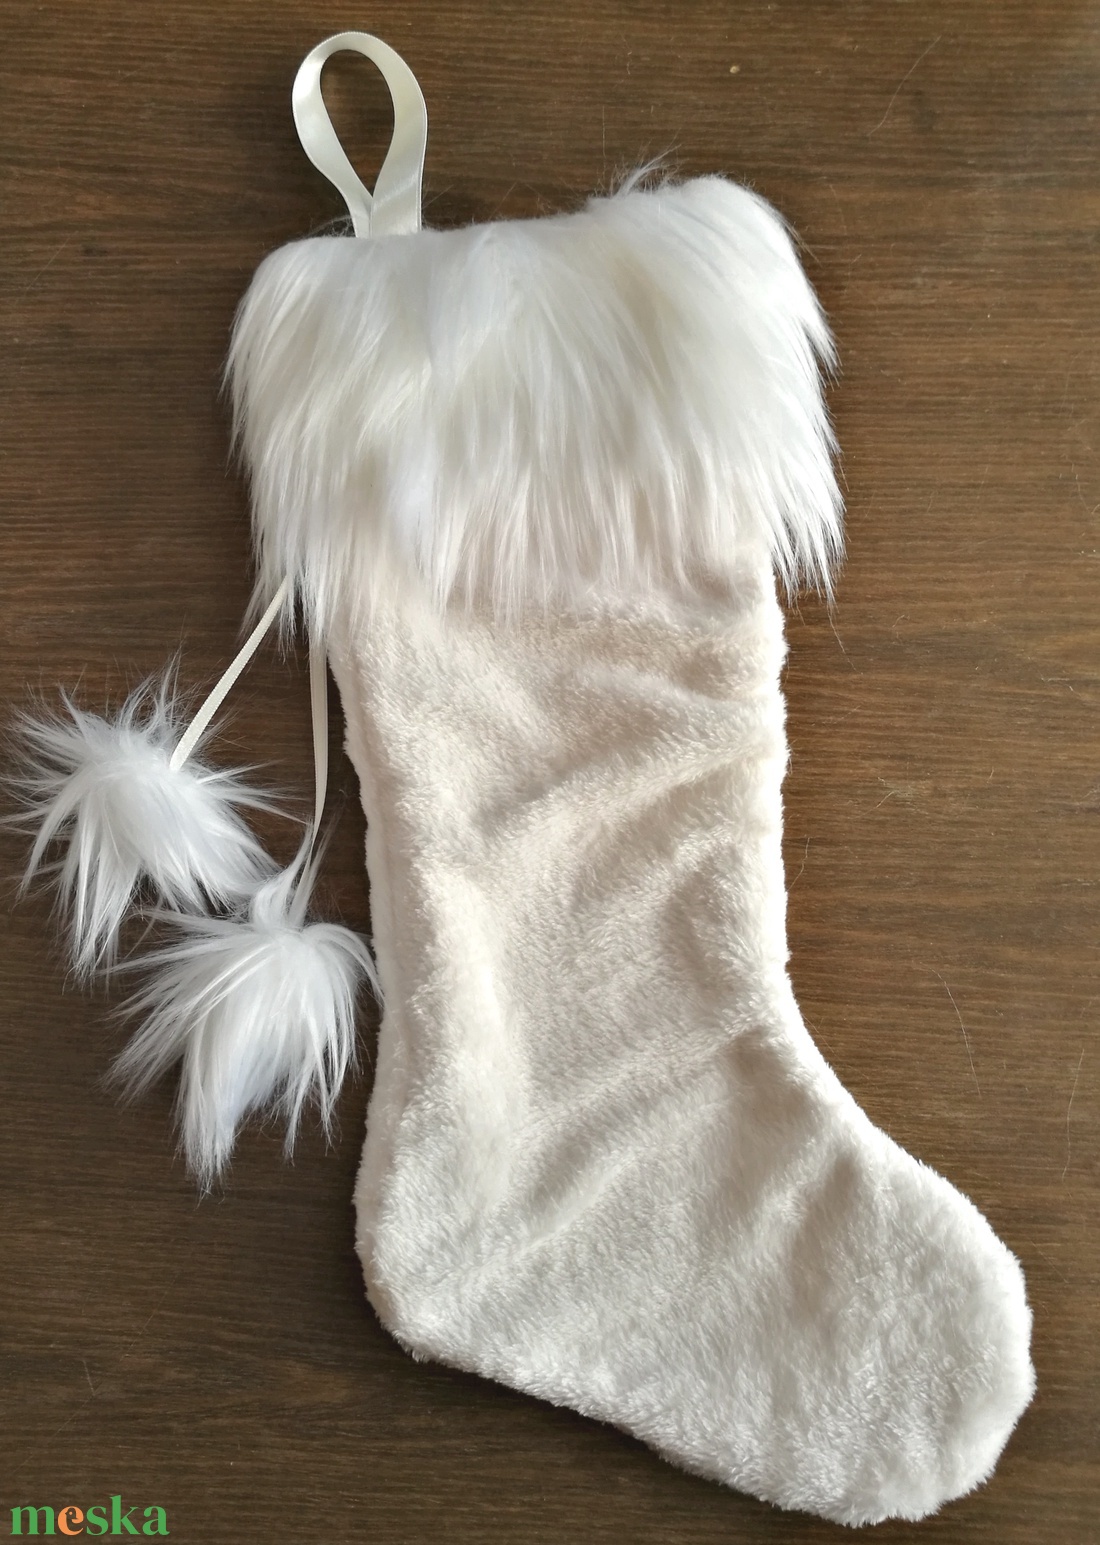 Mikulás zokni natúr fehér krém színű plüss, Mikulászsák elegáns hosszú műszőrmével, Mikulás csizma - karácsony - mikulás - mikulás ajándékok - Meska.hu